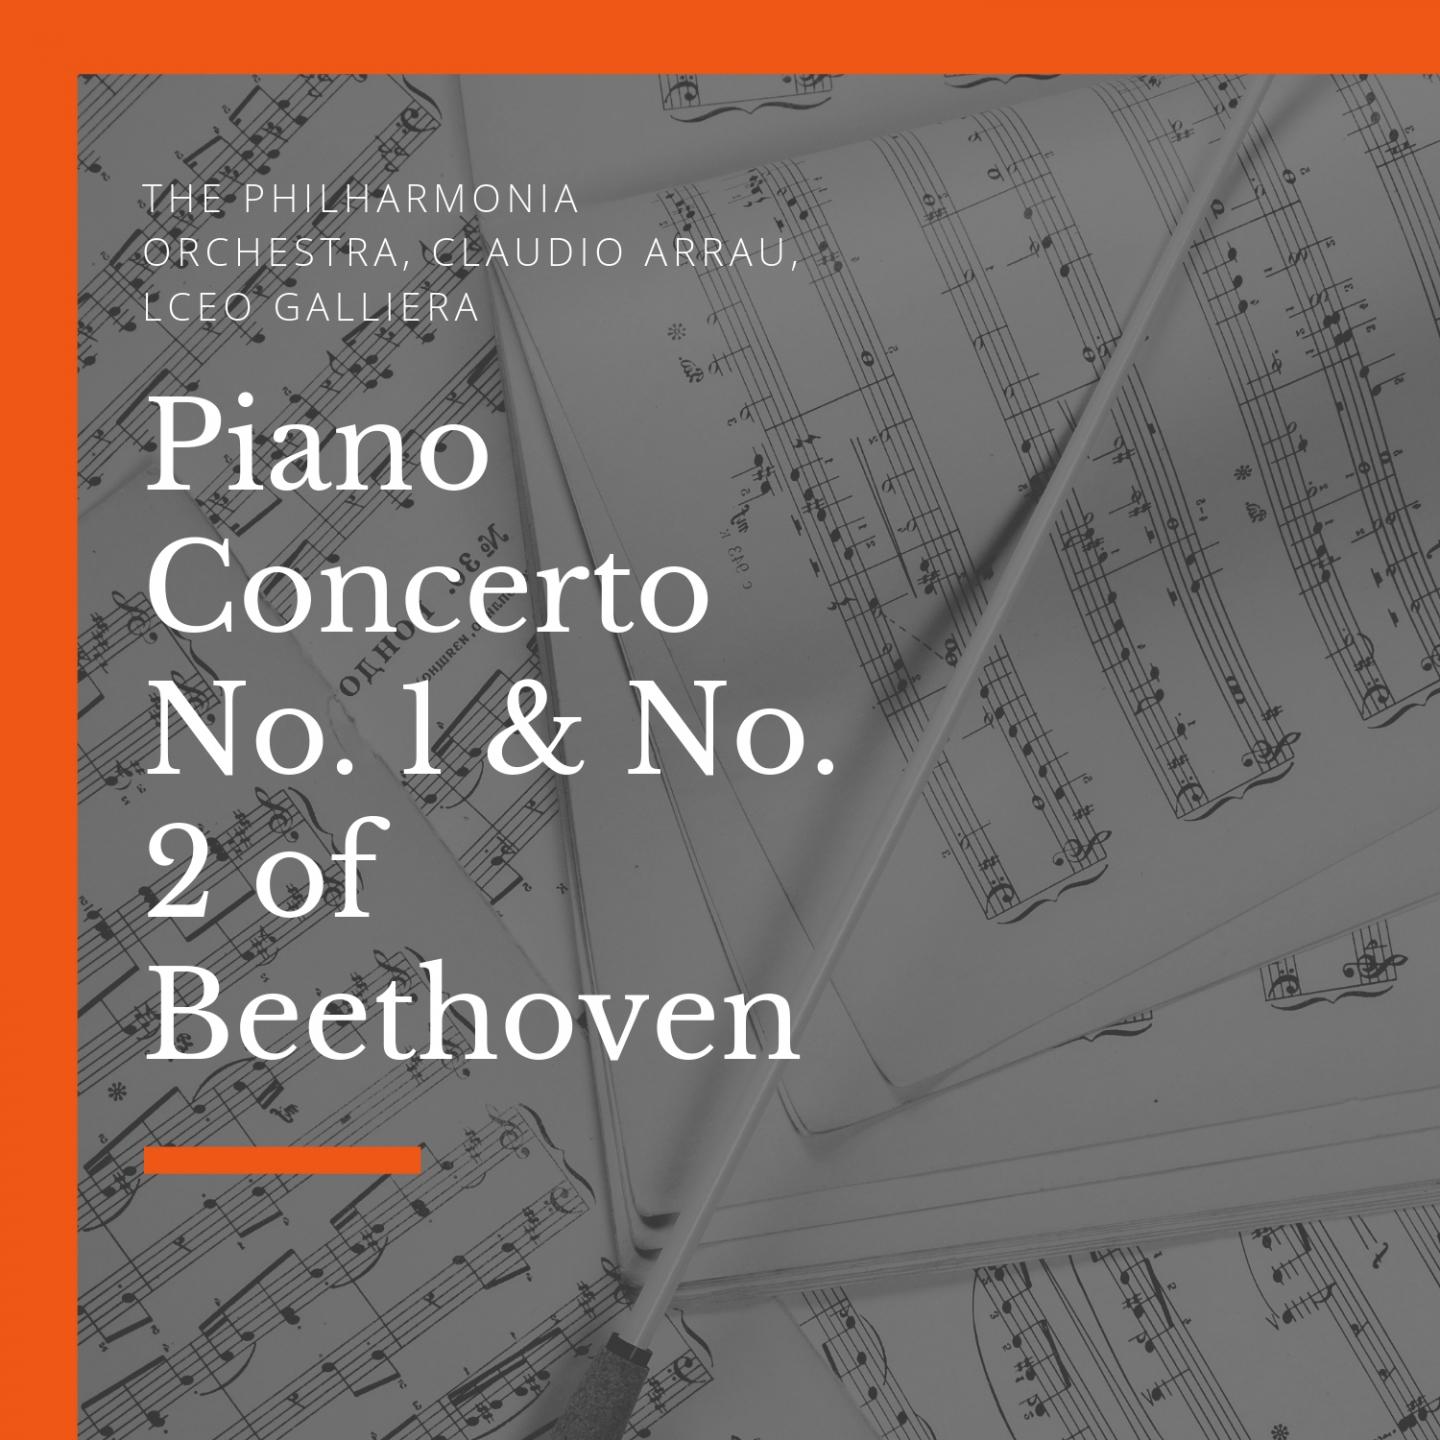 Piano Concerto No. 2, in B-Flat Major, Op. 19: I. Allegro con brio